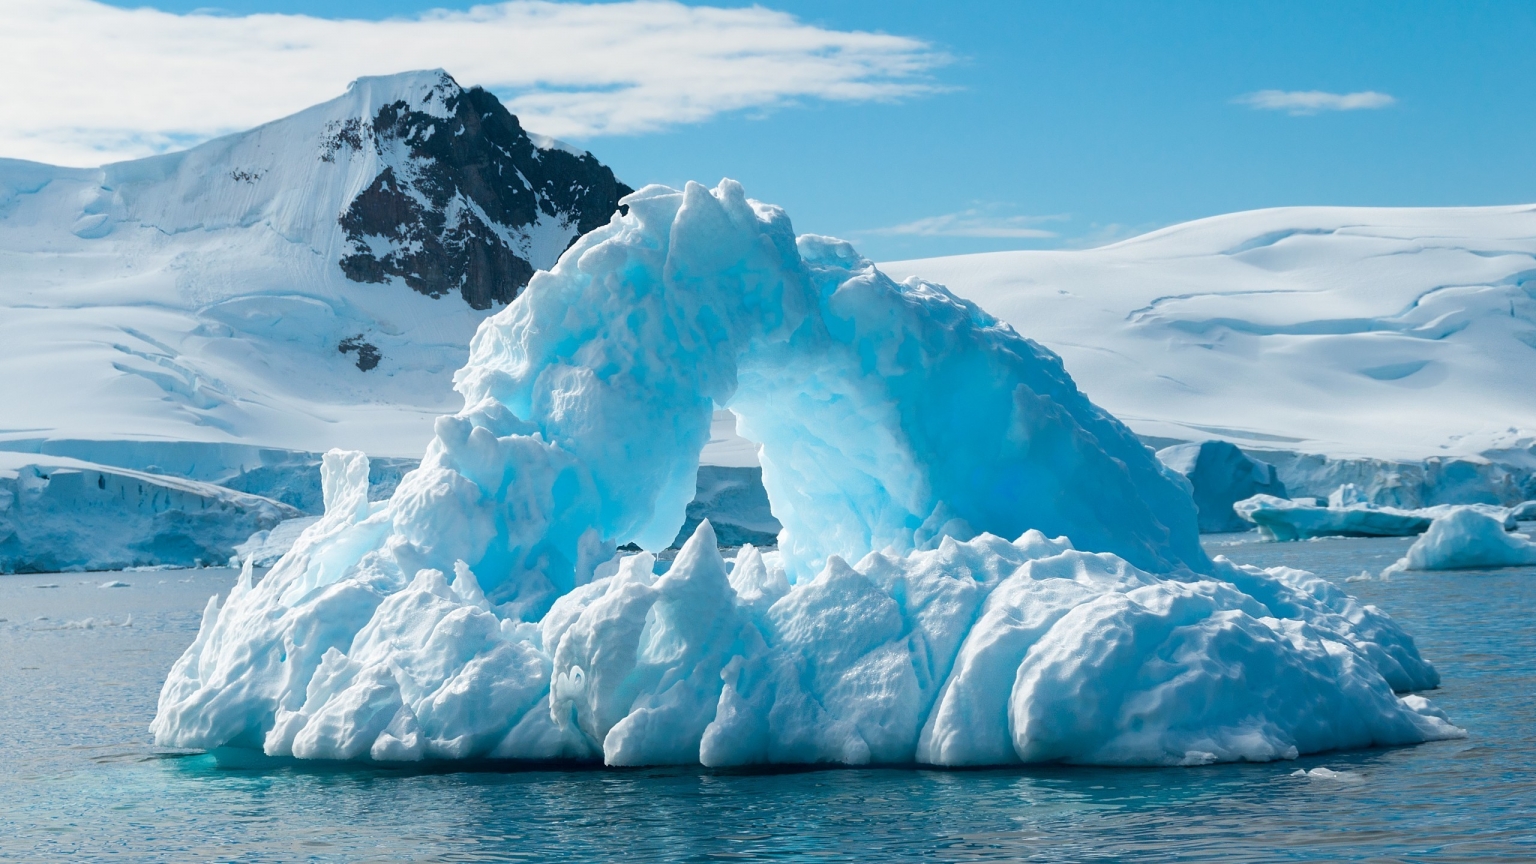 Blue Iceberg for 1536 x 864 HDTV resolution